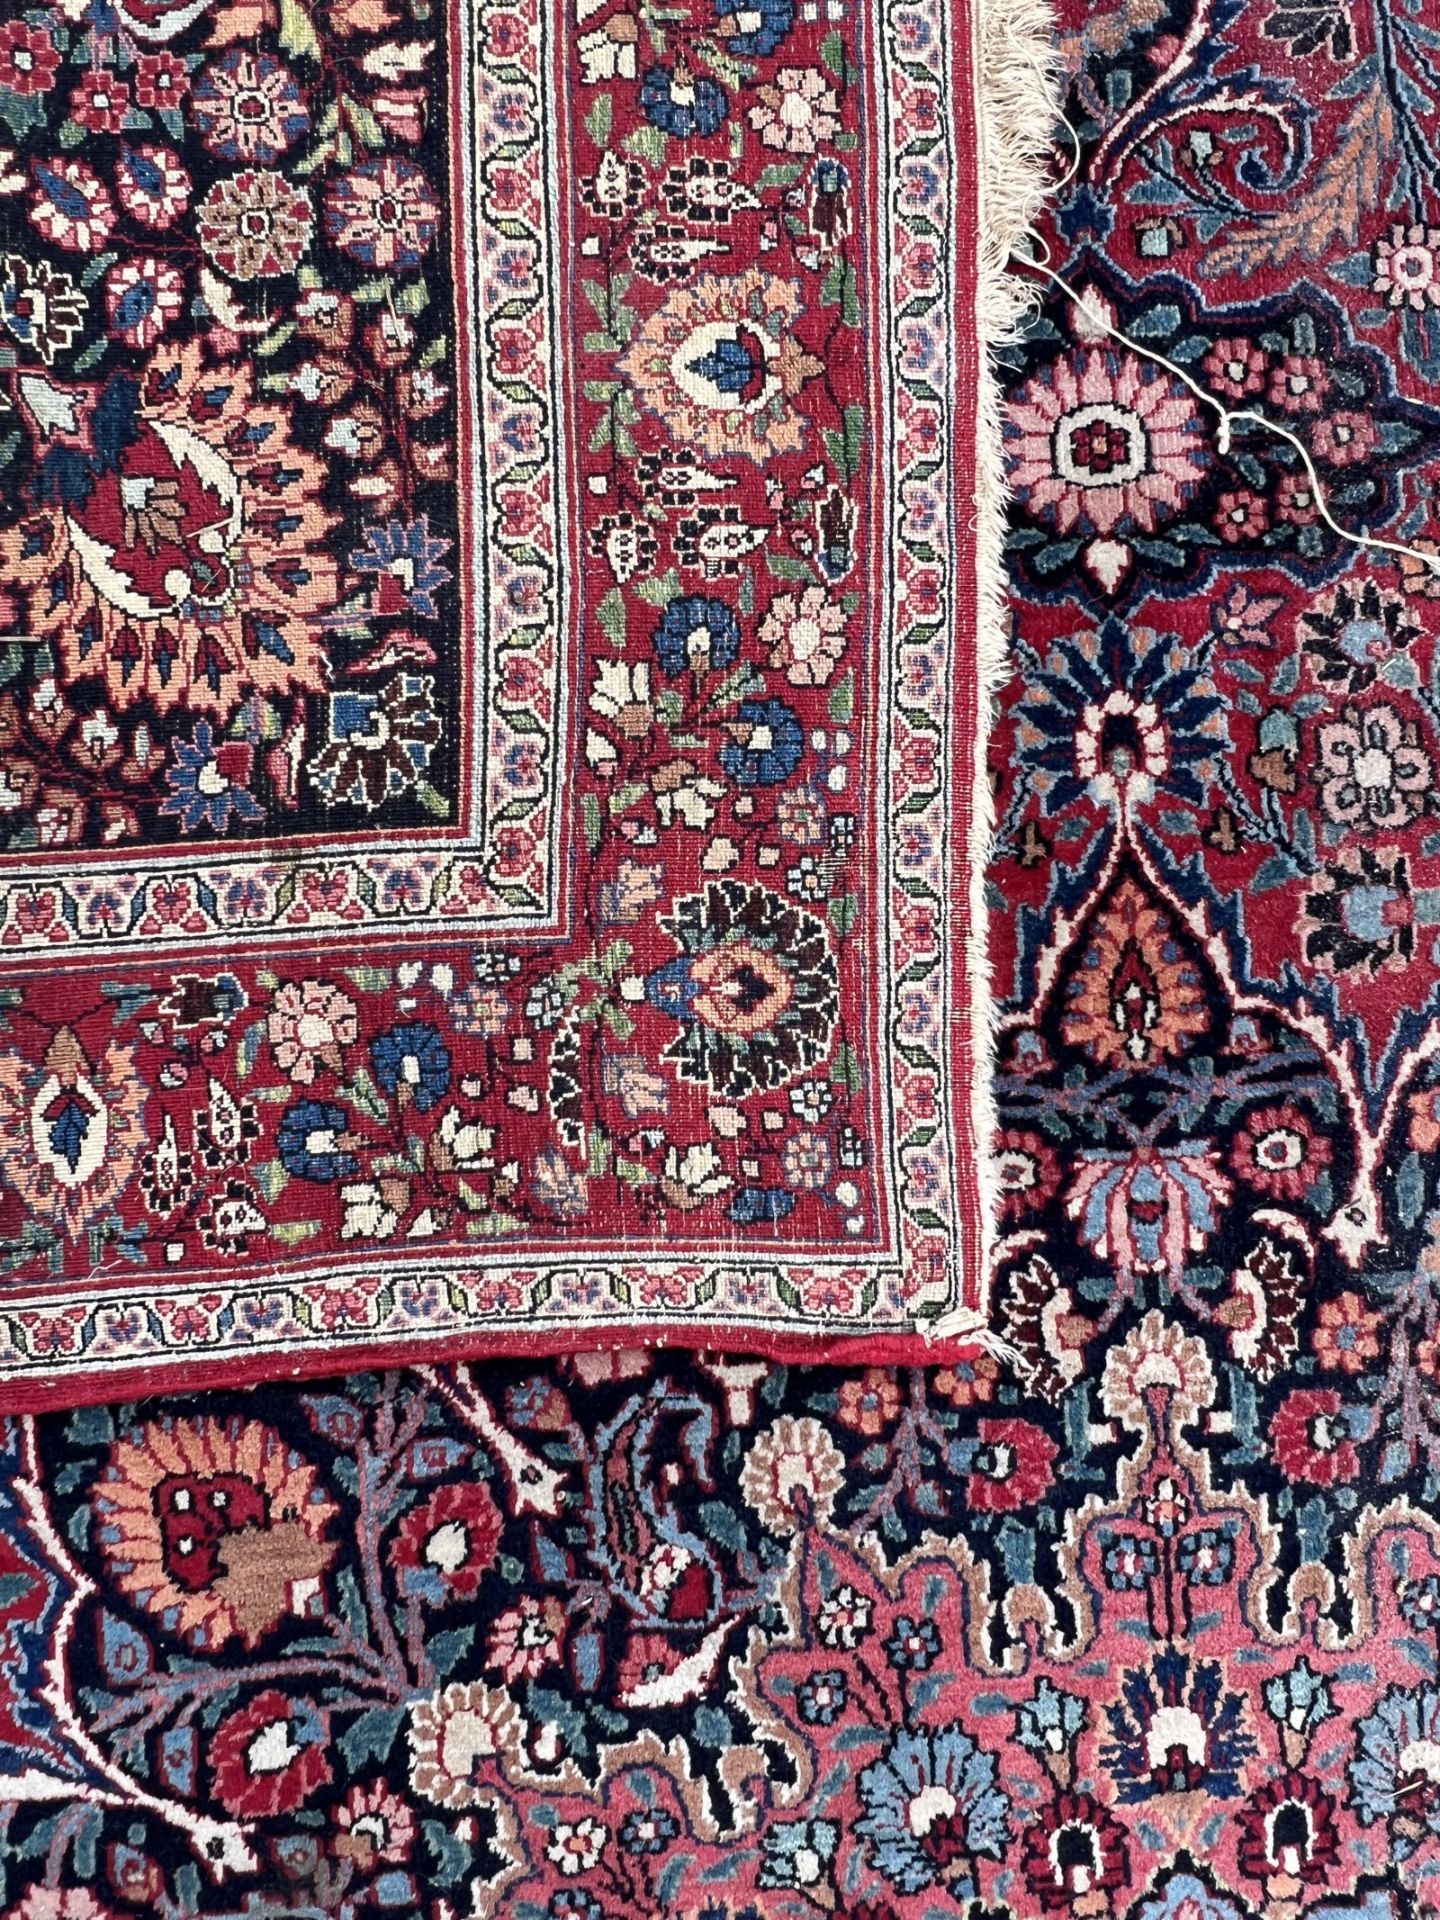 Mesched Salonteppich. Persien. Um 1900. Antik. Signiert ''Hamid Hadawi''. - Bild 16 aus 17